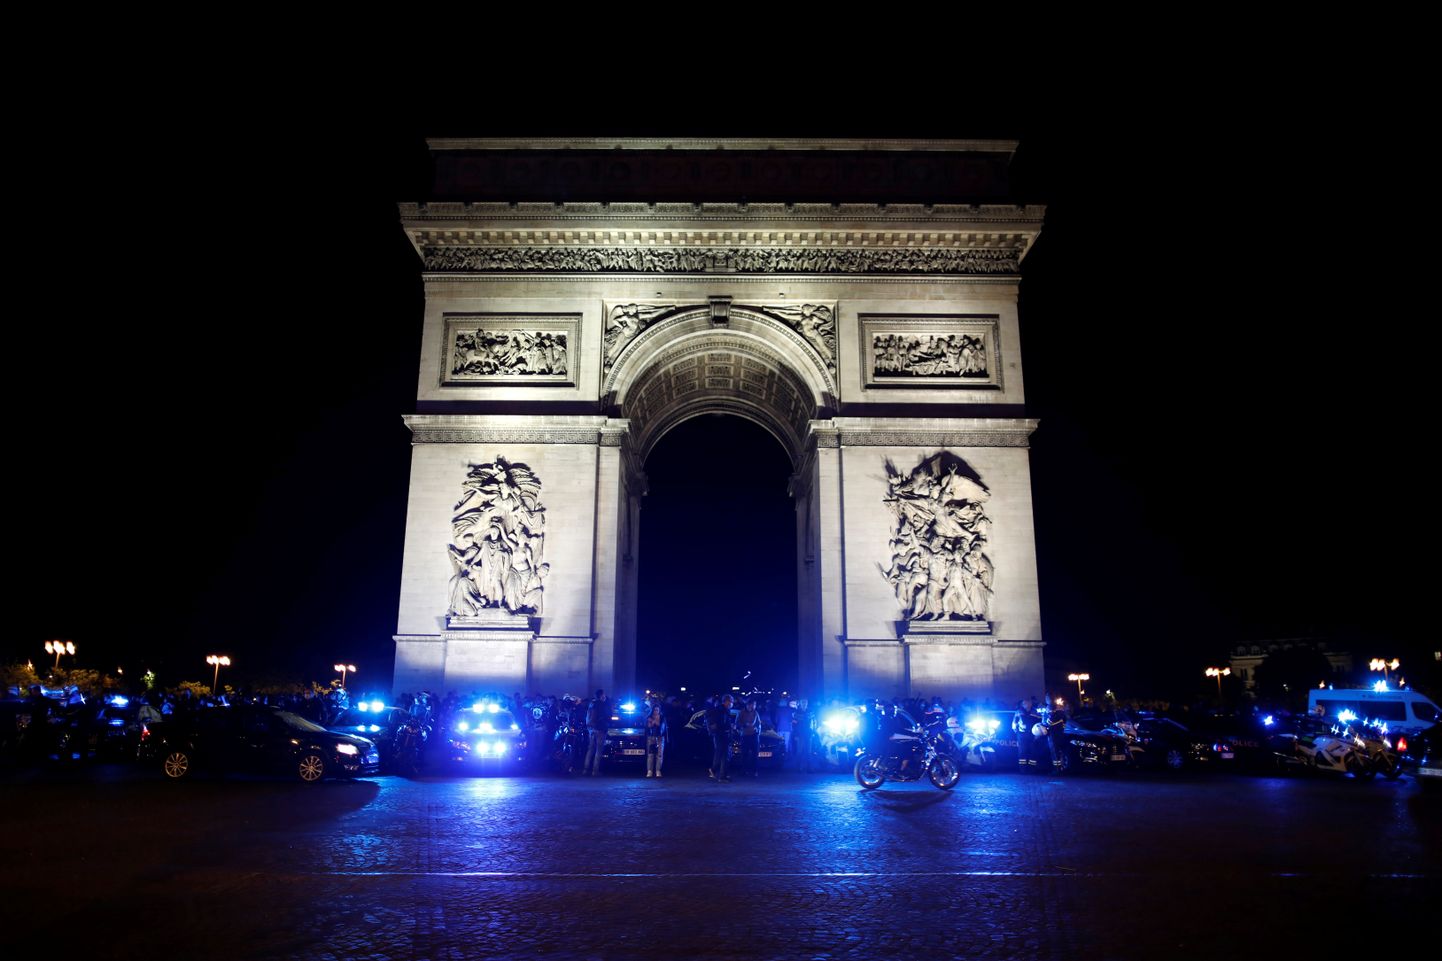 Prantsuse politseinikud avaldasid esmaspäeva õhtul meelt siseminister Christophe Castaneri reformide vastu, mille hulgas oli ka vastuoluline kägistamisvõte, mida korrakaitsjad rakendavad keerulisematel kinnipidamistel.